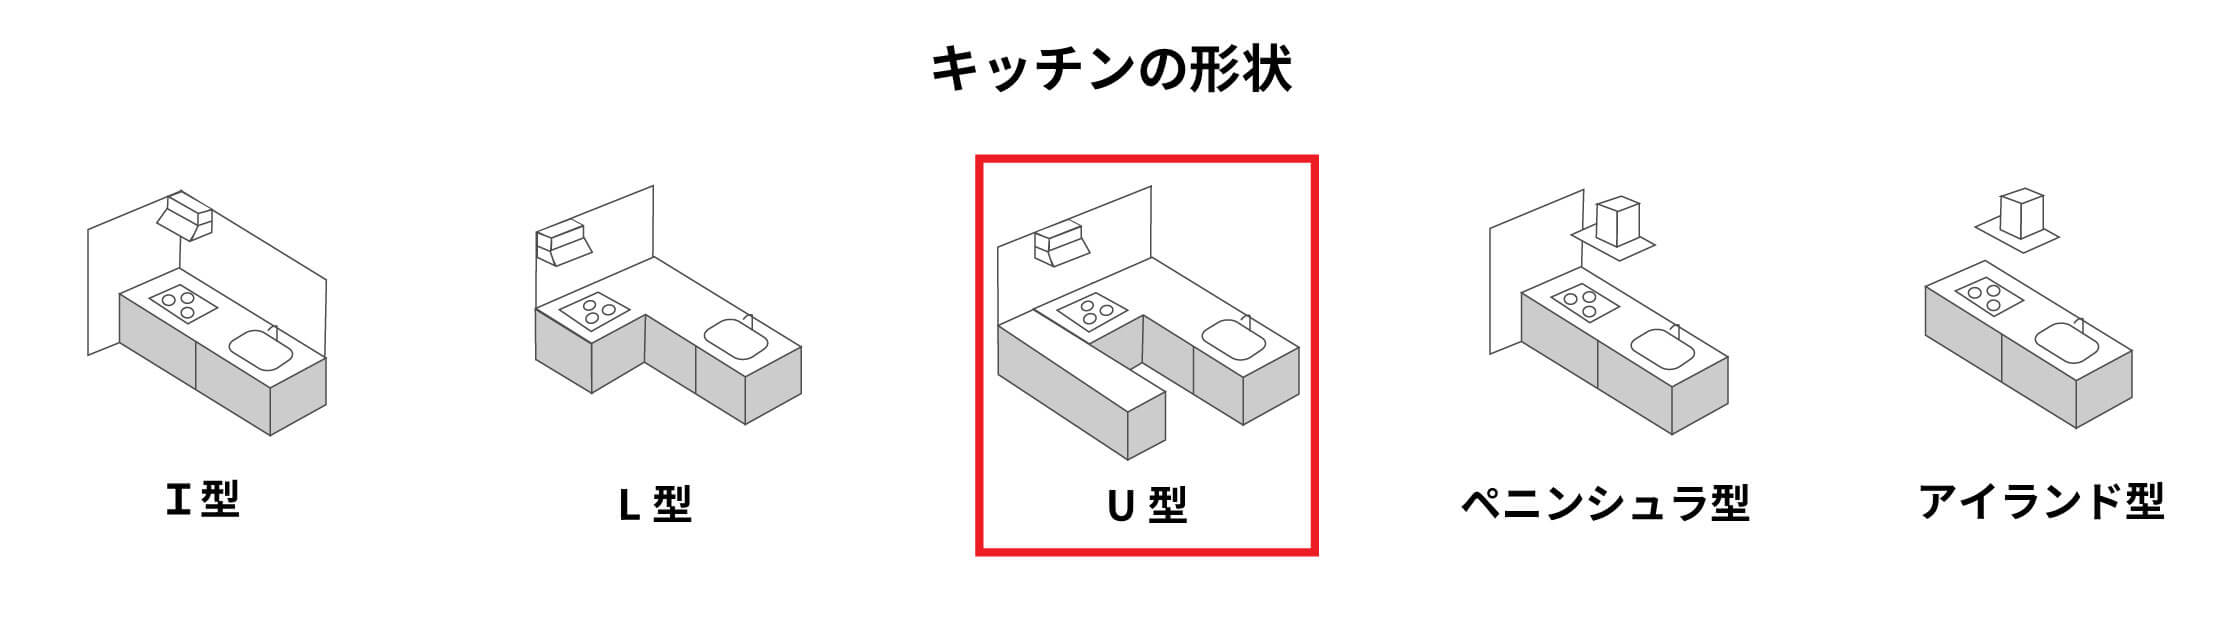 【キッチンの形状】・I型・L型・U型・ペニンシュラ型・アイランド型　5種類の中のU型にマーク